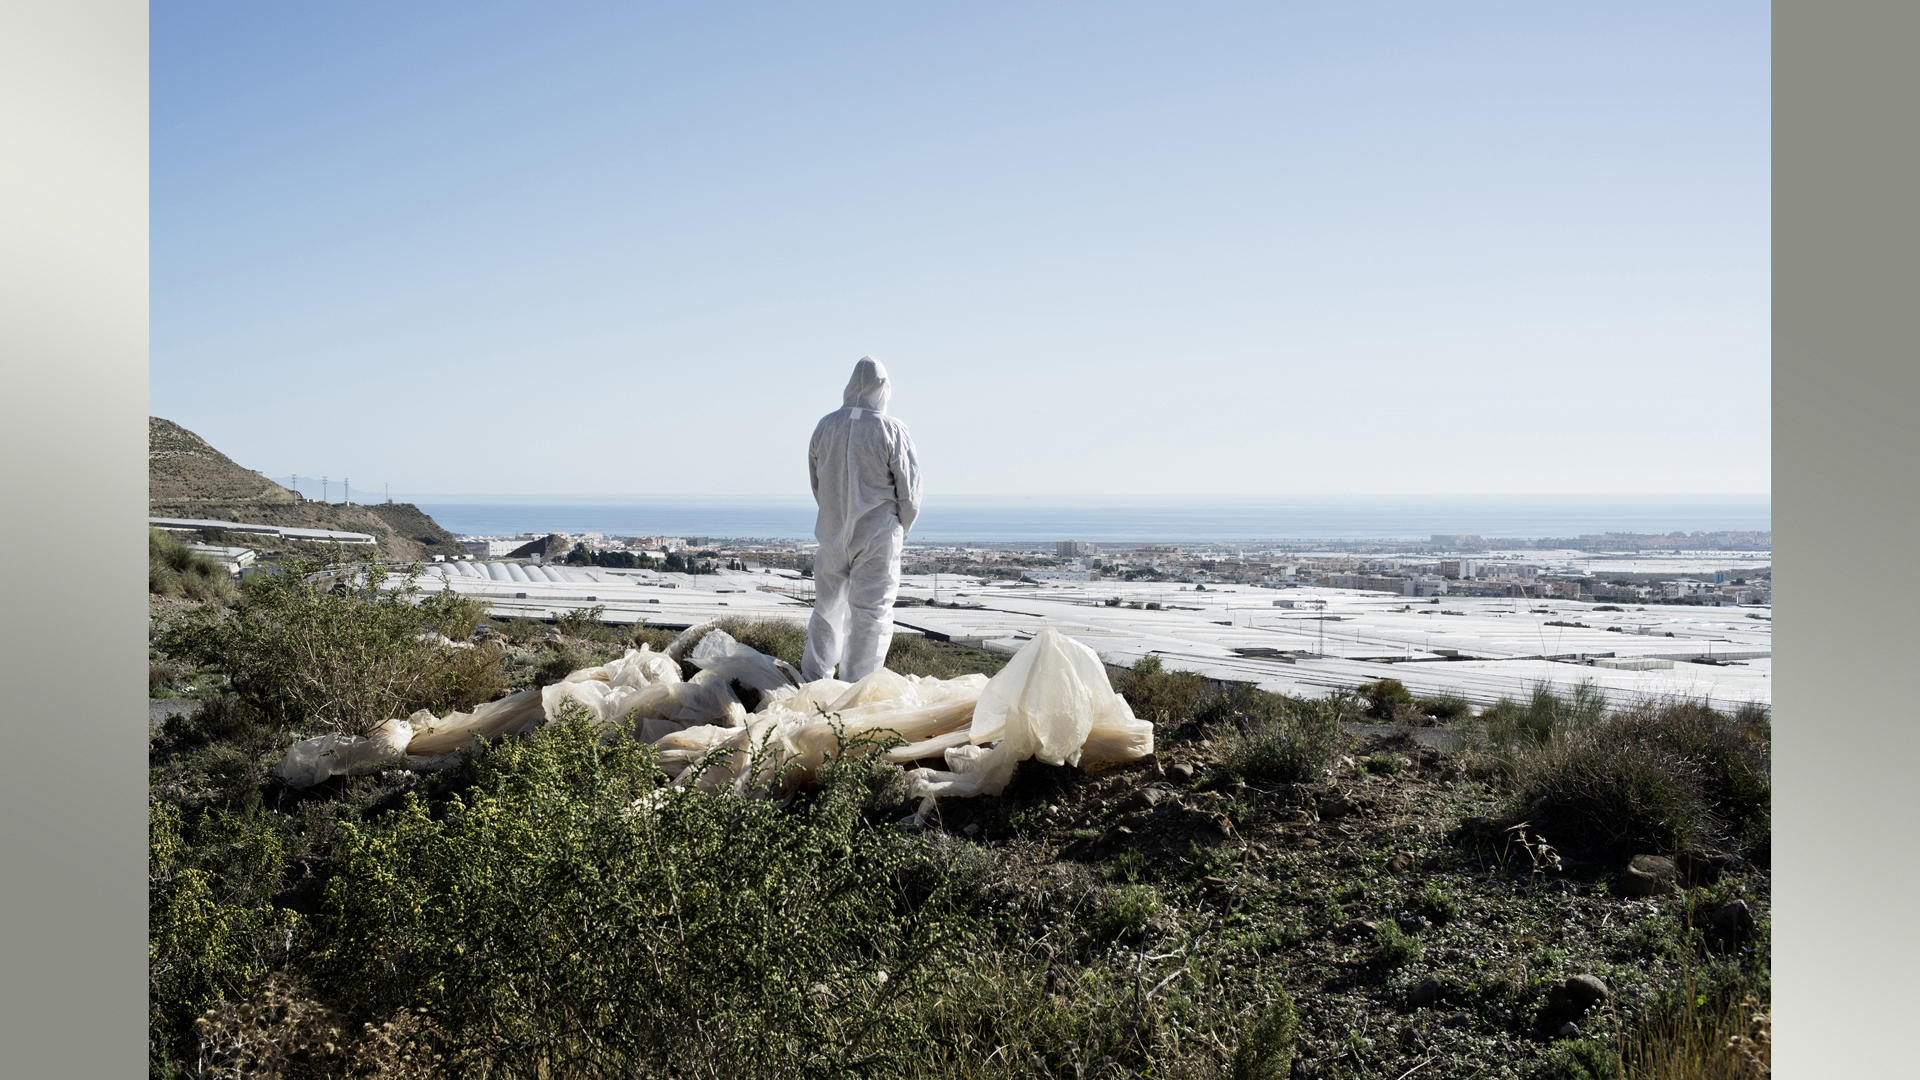 Eine Figur in einem Schutzanzug schaut auf mit Folie bedeckte Gemüseplantage in Südspanien | Raul Walch